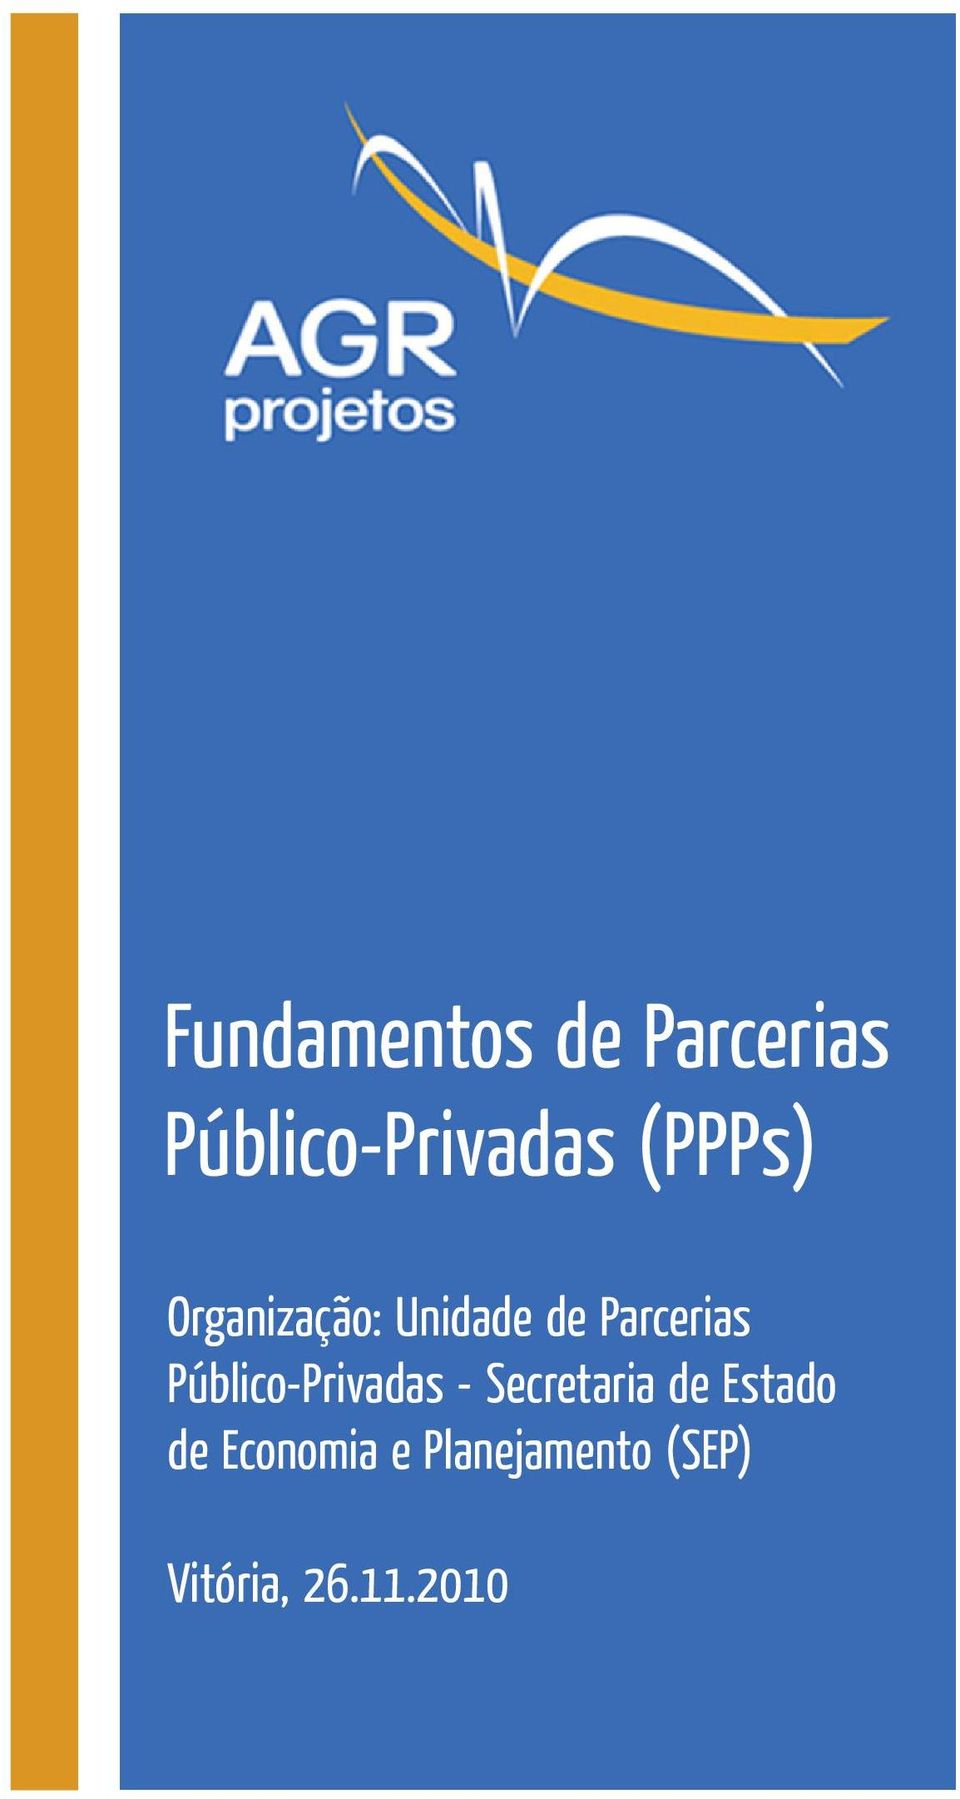 Público-Privadas - Secretaria de Estado de